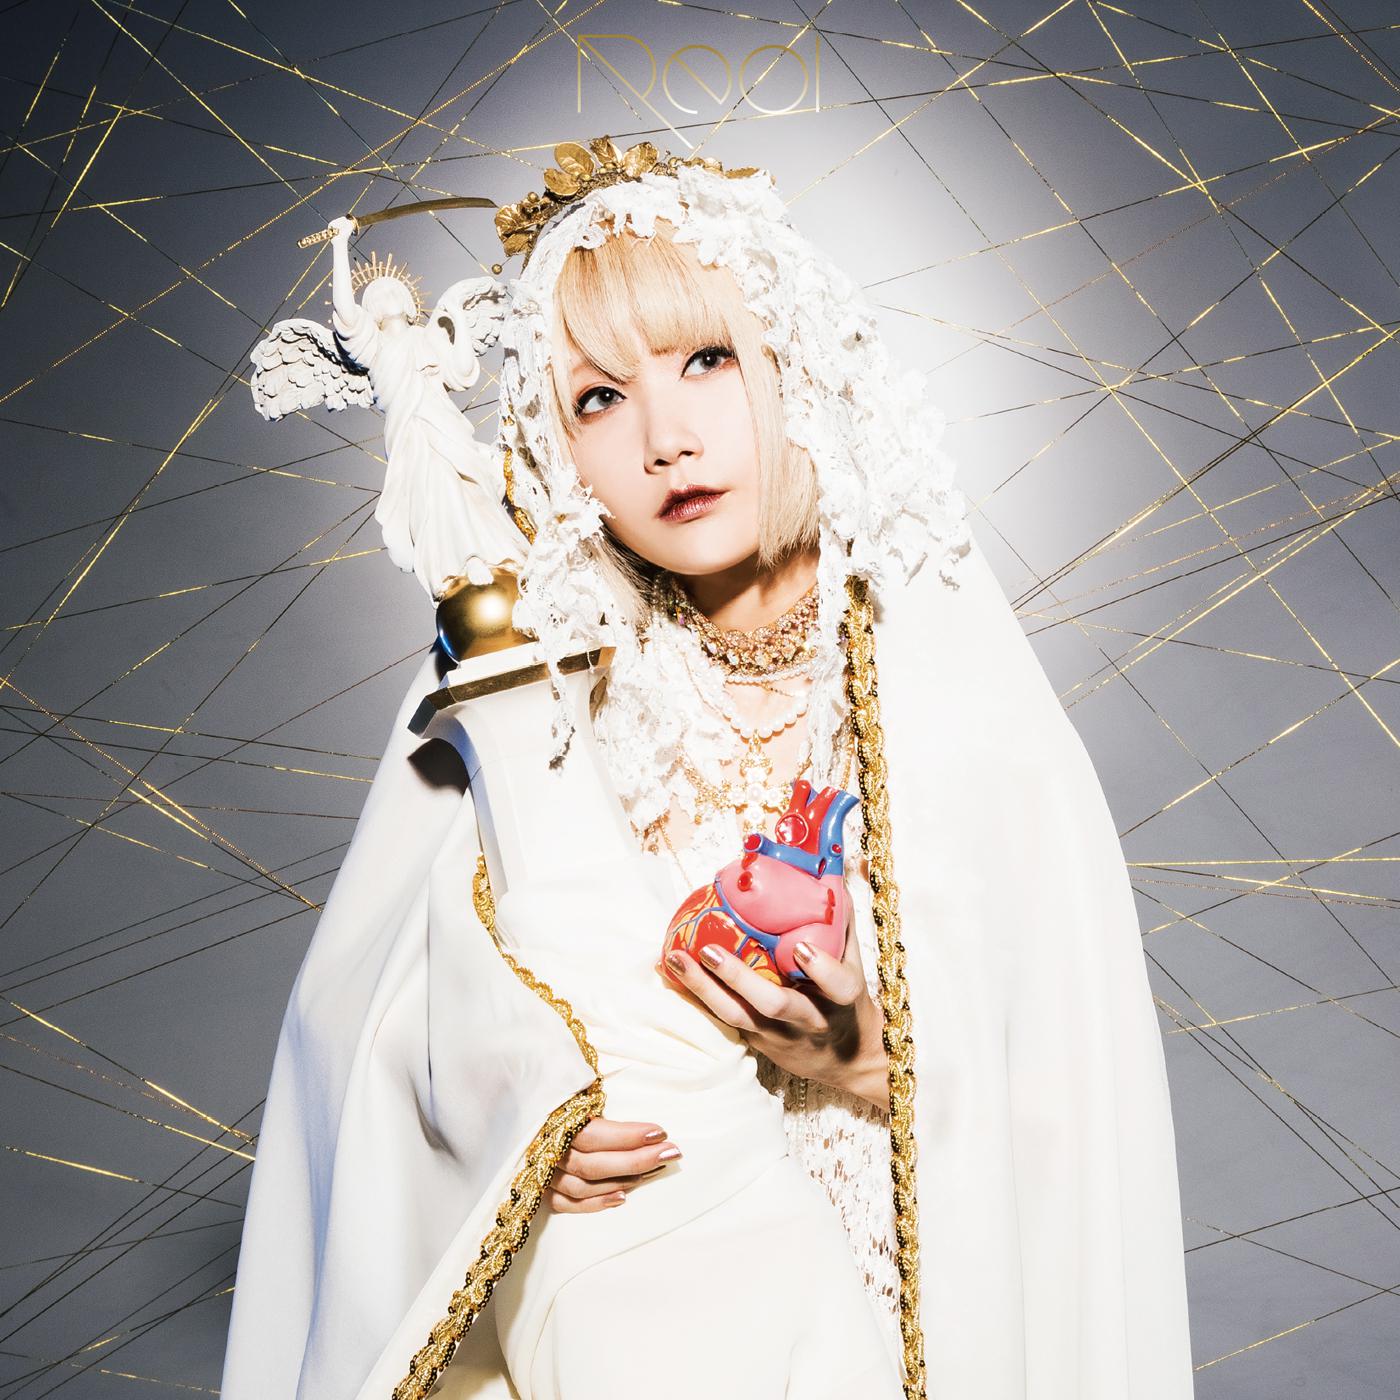 ゆーれいずみー歌词 歌手Reol-专辑金字塔-单曲《ゆーれいずみー》LRC歌词下载